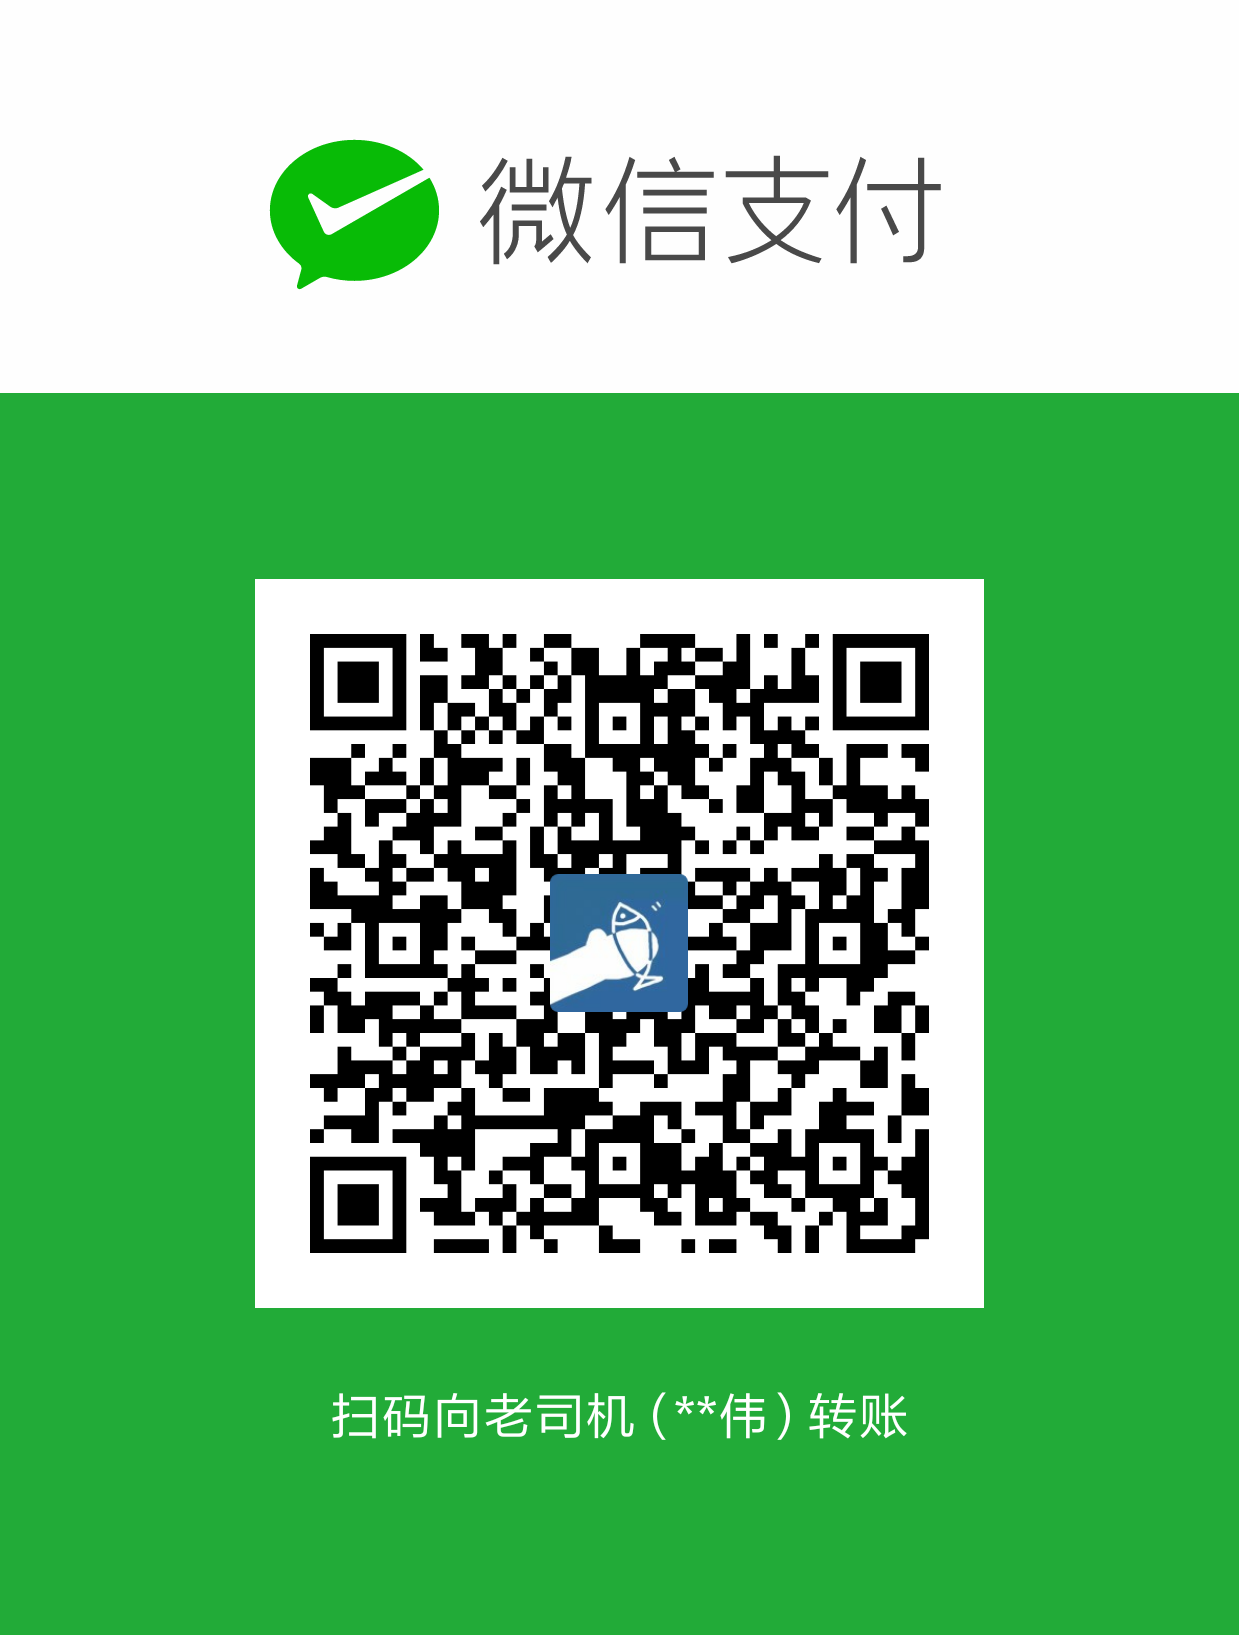 轻口味 WeChat Pay